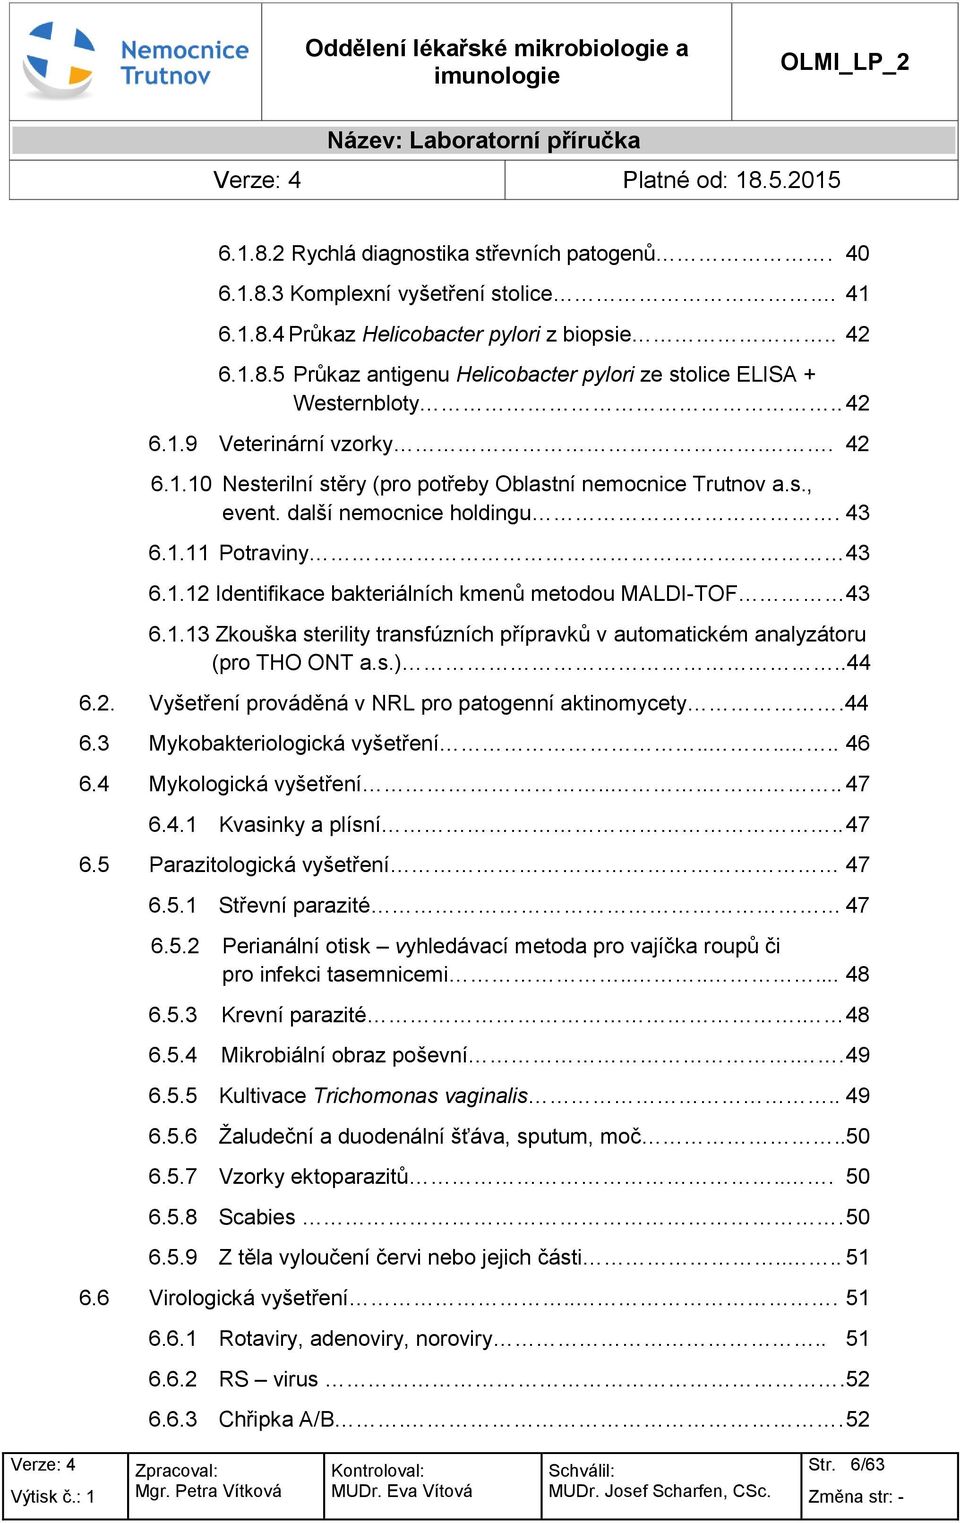 další nemcnice hldingu. 43 6.1.11 Ptraviny 43 6.1.12 Identifikace bakteriálních kmenů metdu MALDI-TOF 43 6.1.13 Zkuška sterility transfúzních přípravků v autmatickém analyzátru (pr THO ONT a.s.)..44 6.